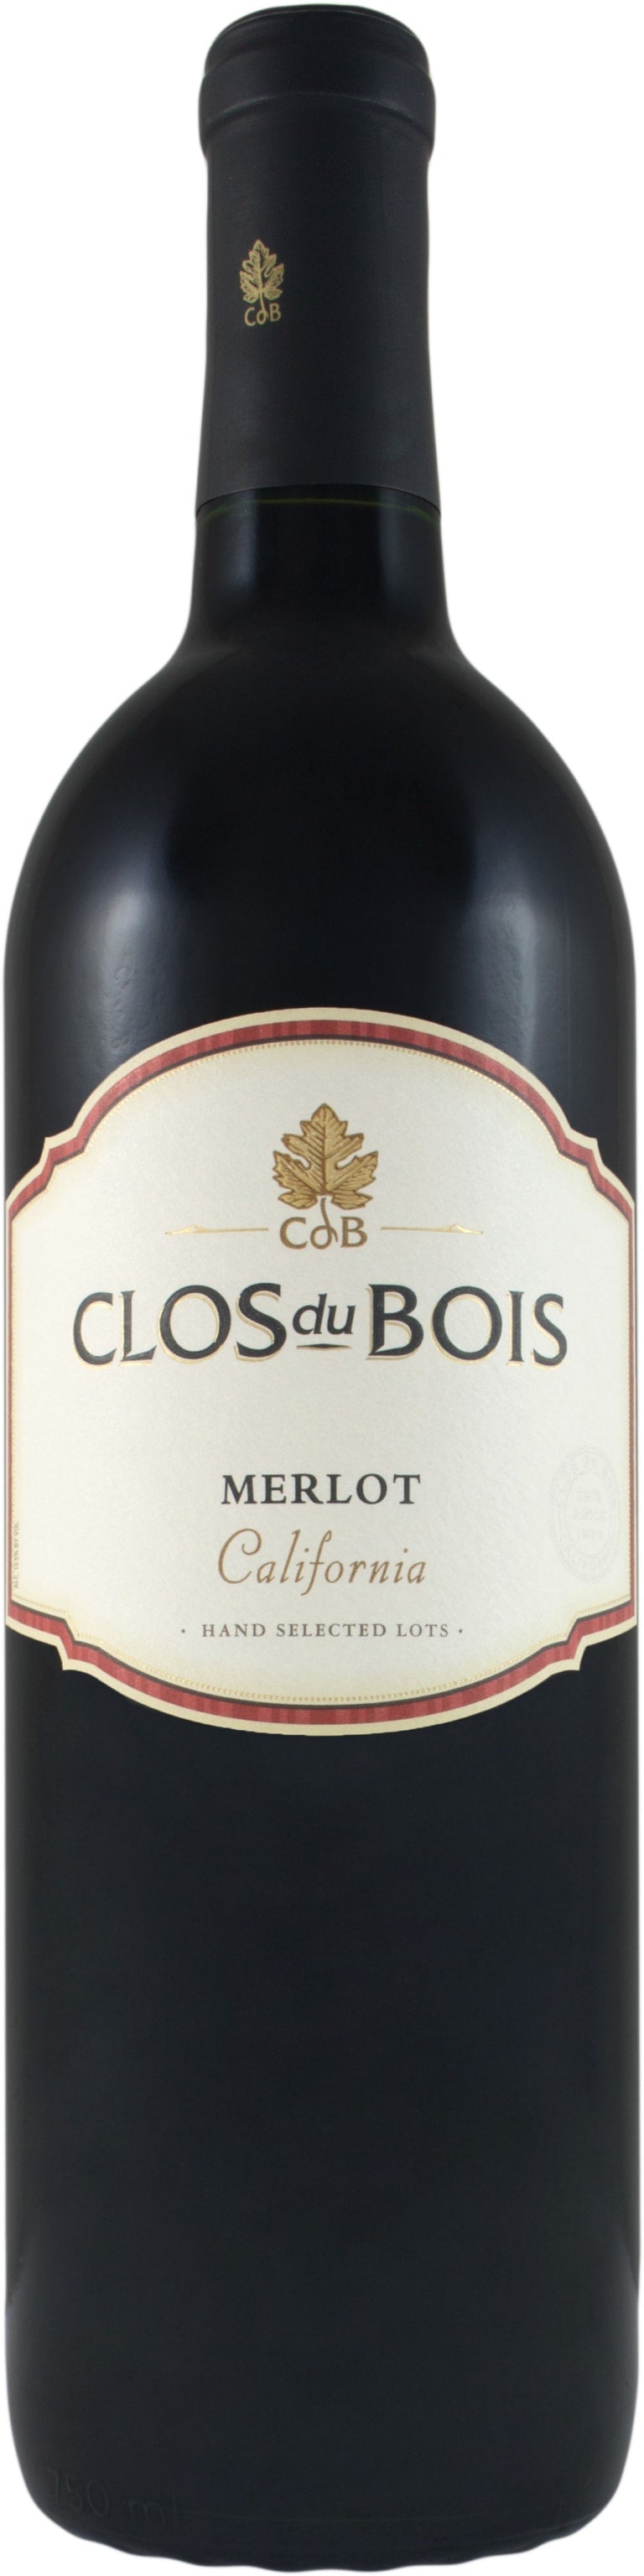 Clos du Bois Merlot 2017